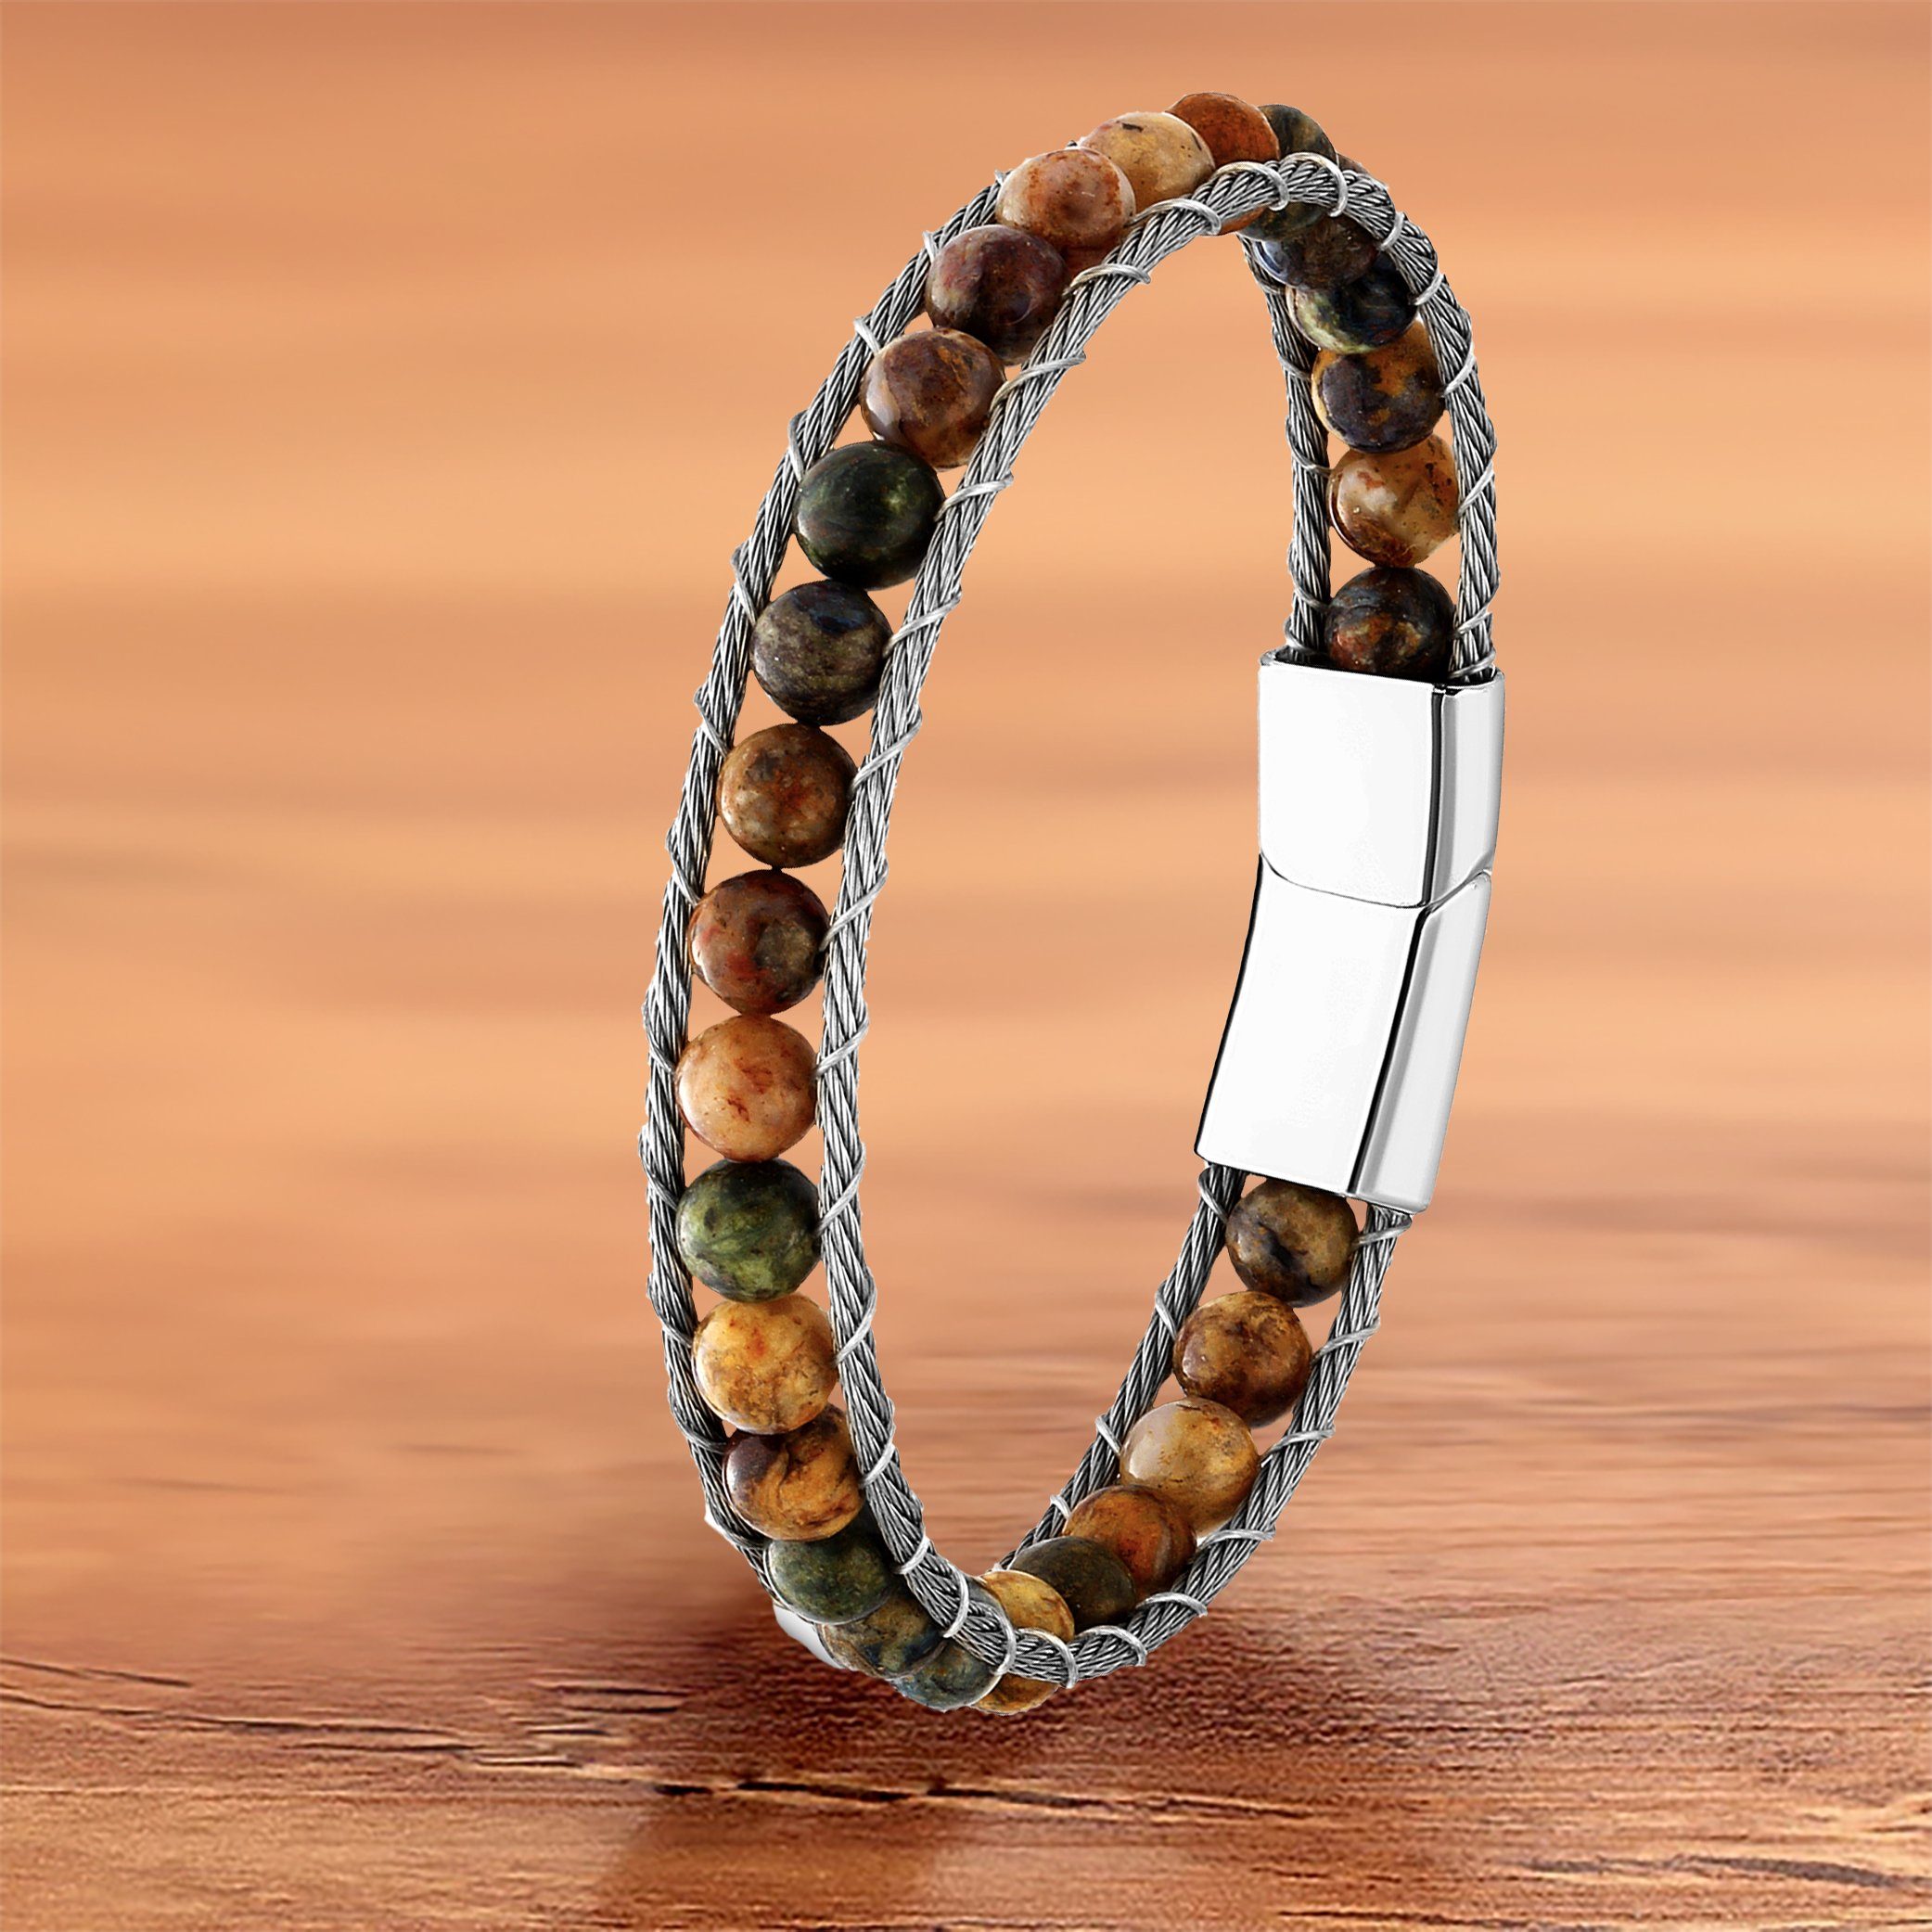 NAHLE Perlenarmband Tigerauge Naturstein Armband (inkl. Schmuckschachtel), mit Magnetverschluss für ein sicheres verschließen